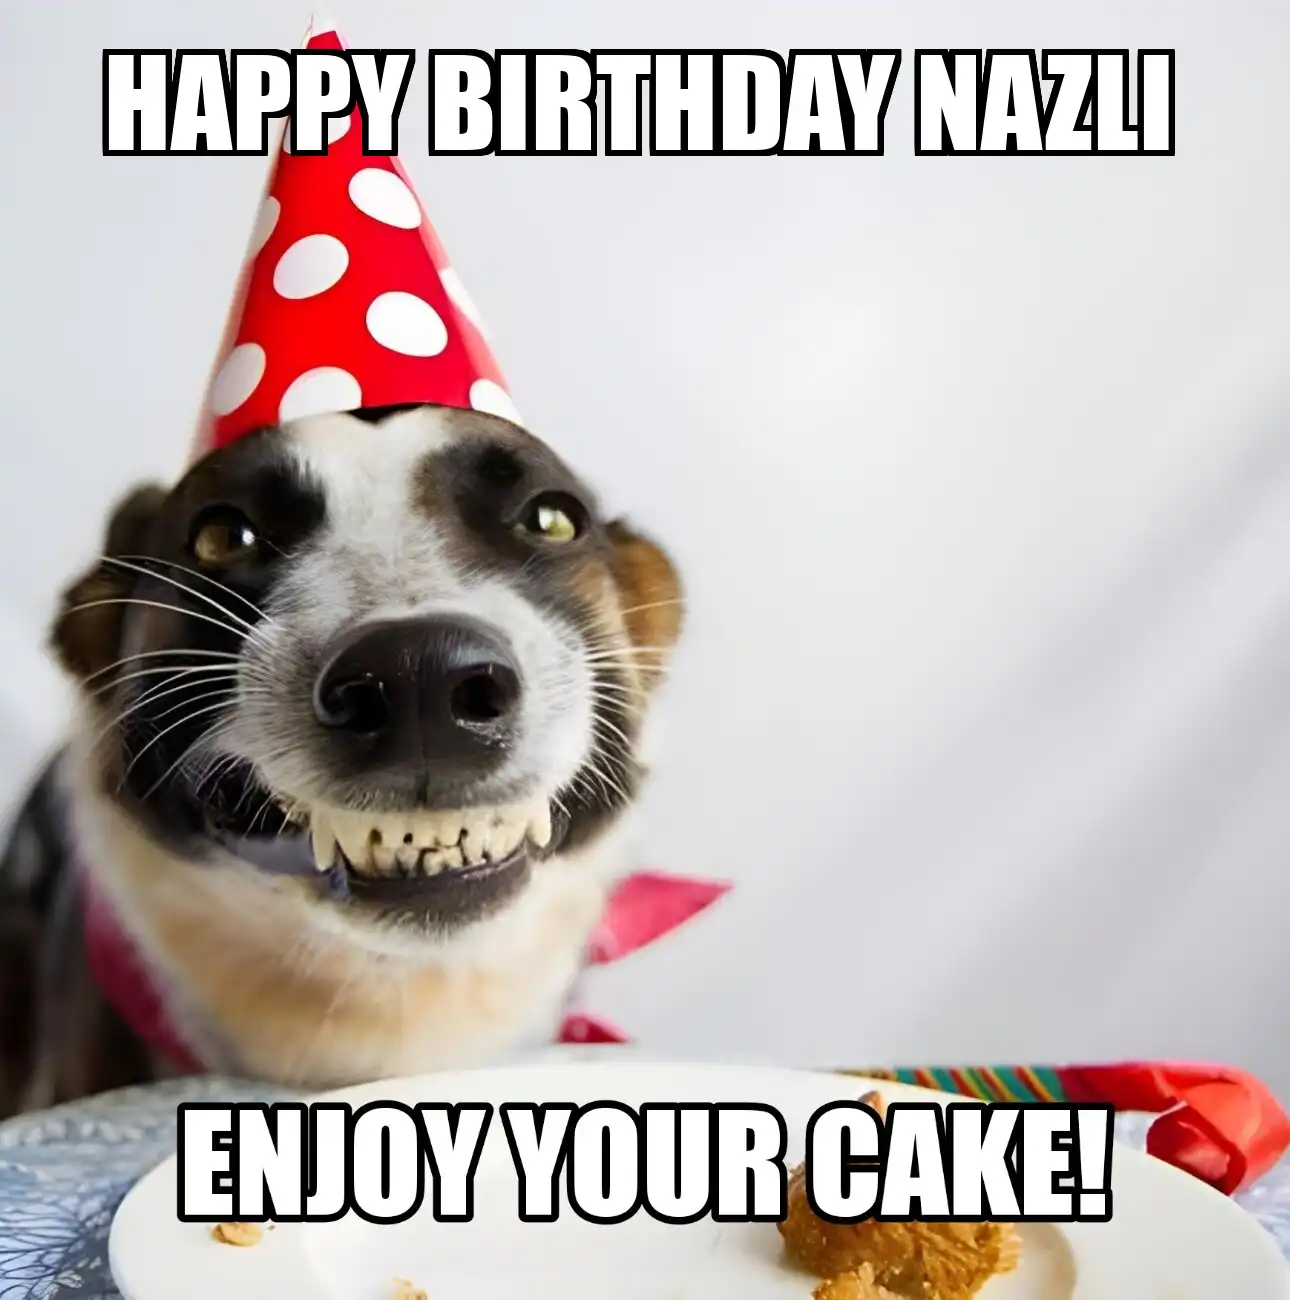 Happy Birthday Nazli Enjoy Your Cake Dog Meme